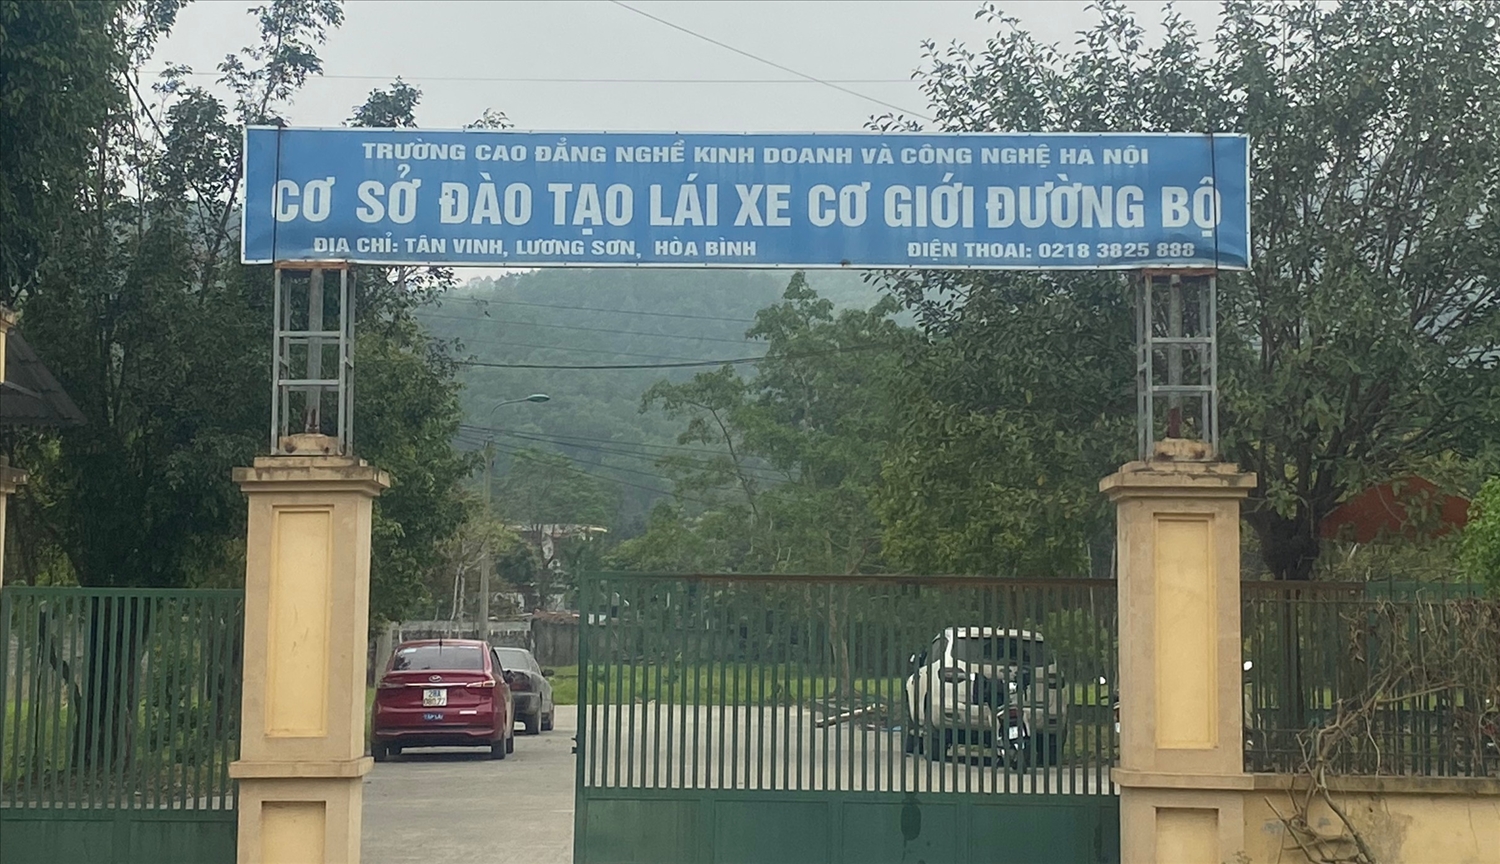 Trung tâm đào tạo và sát hạch lái xe cơ giới đường bộ tại xã Tân Vinh, huyện Lương Sơn, tỉnh Hoà Bình